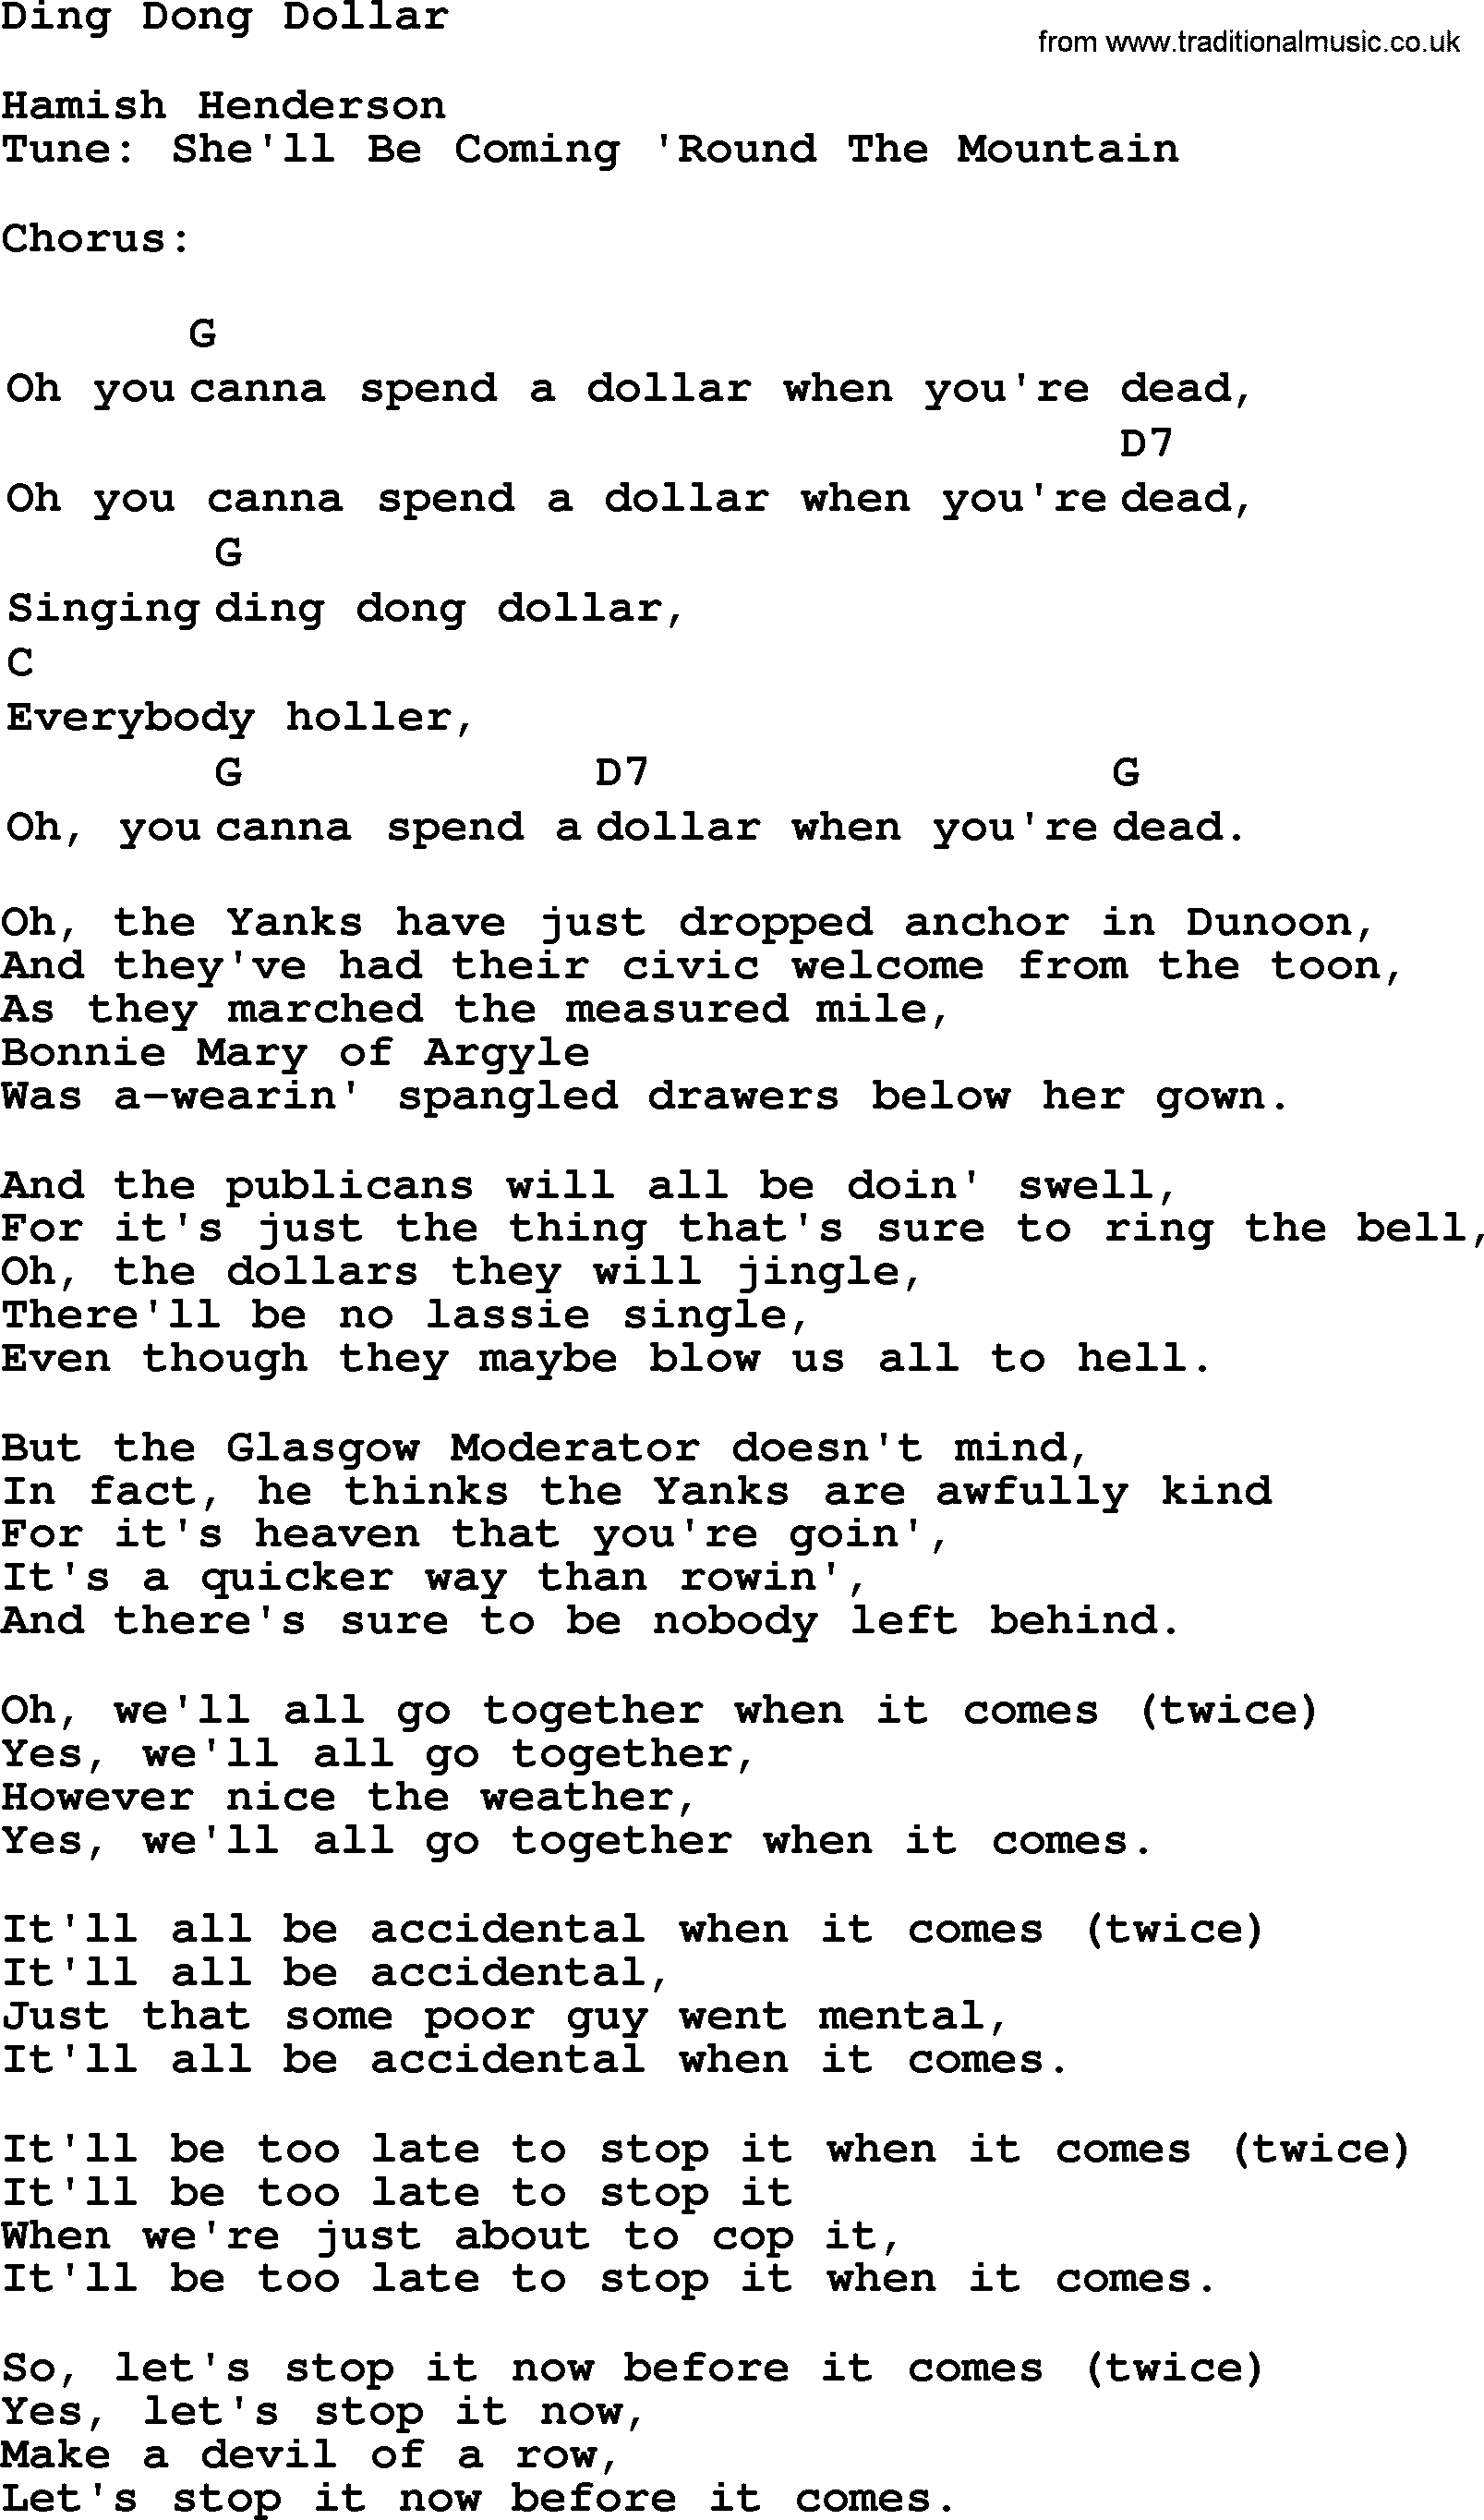 Ring ding dong lyrics